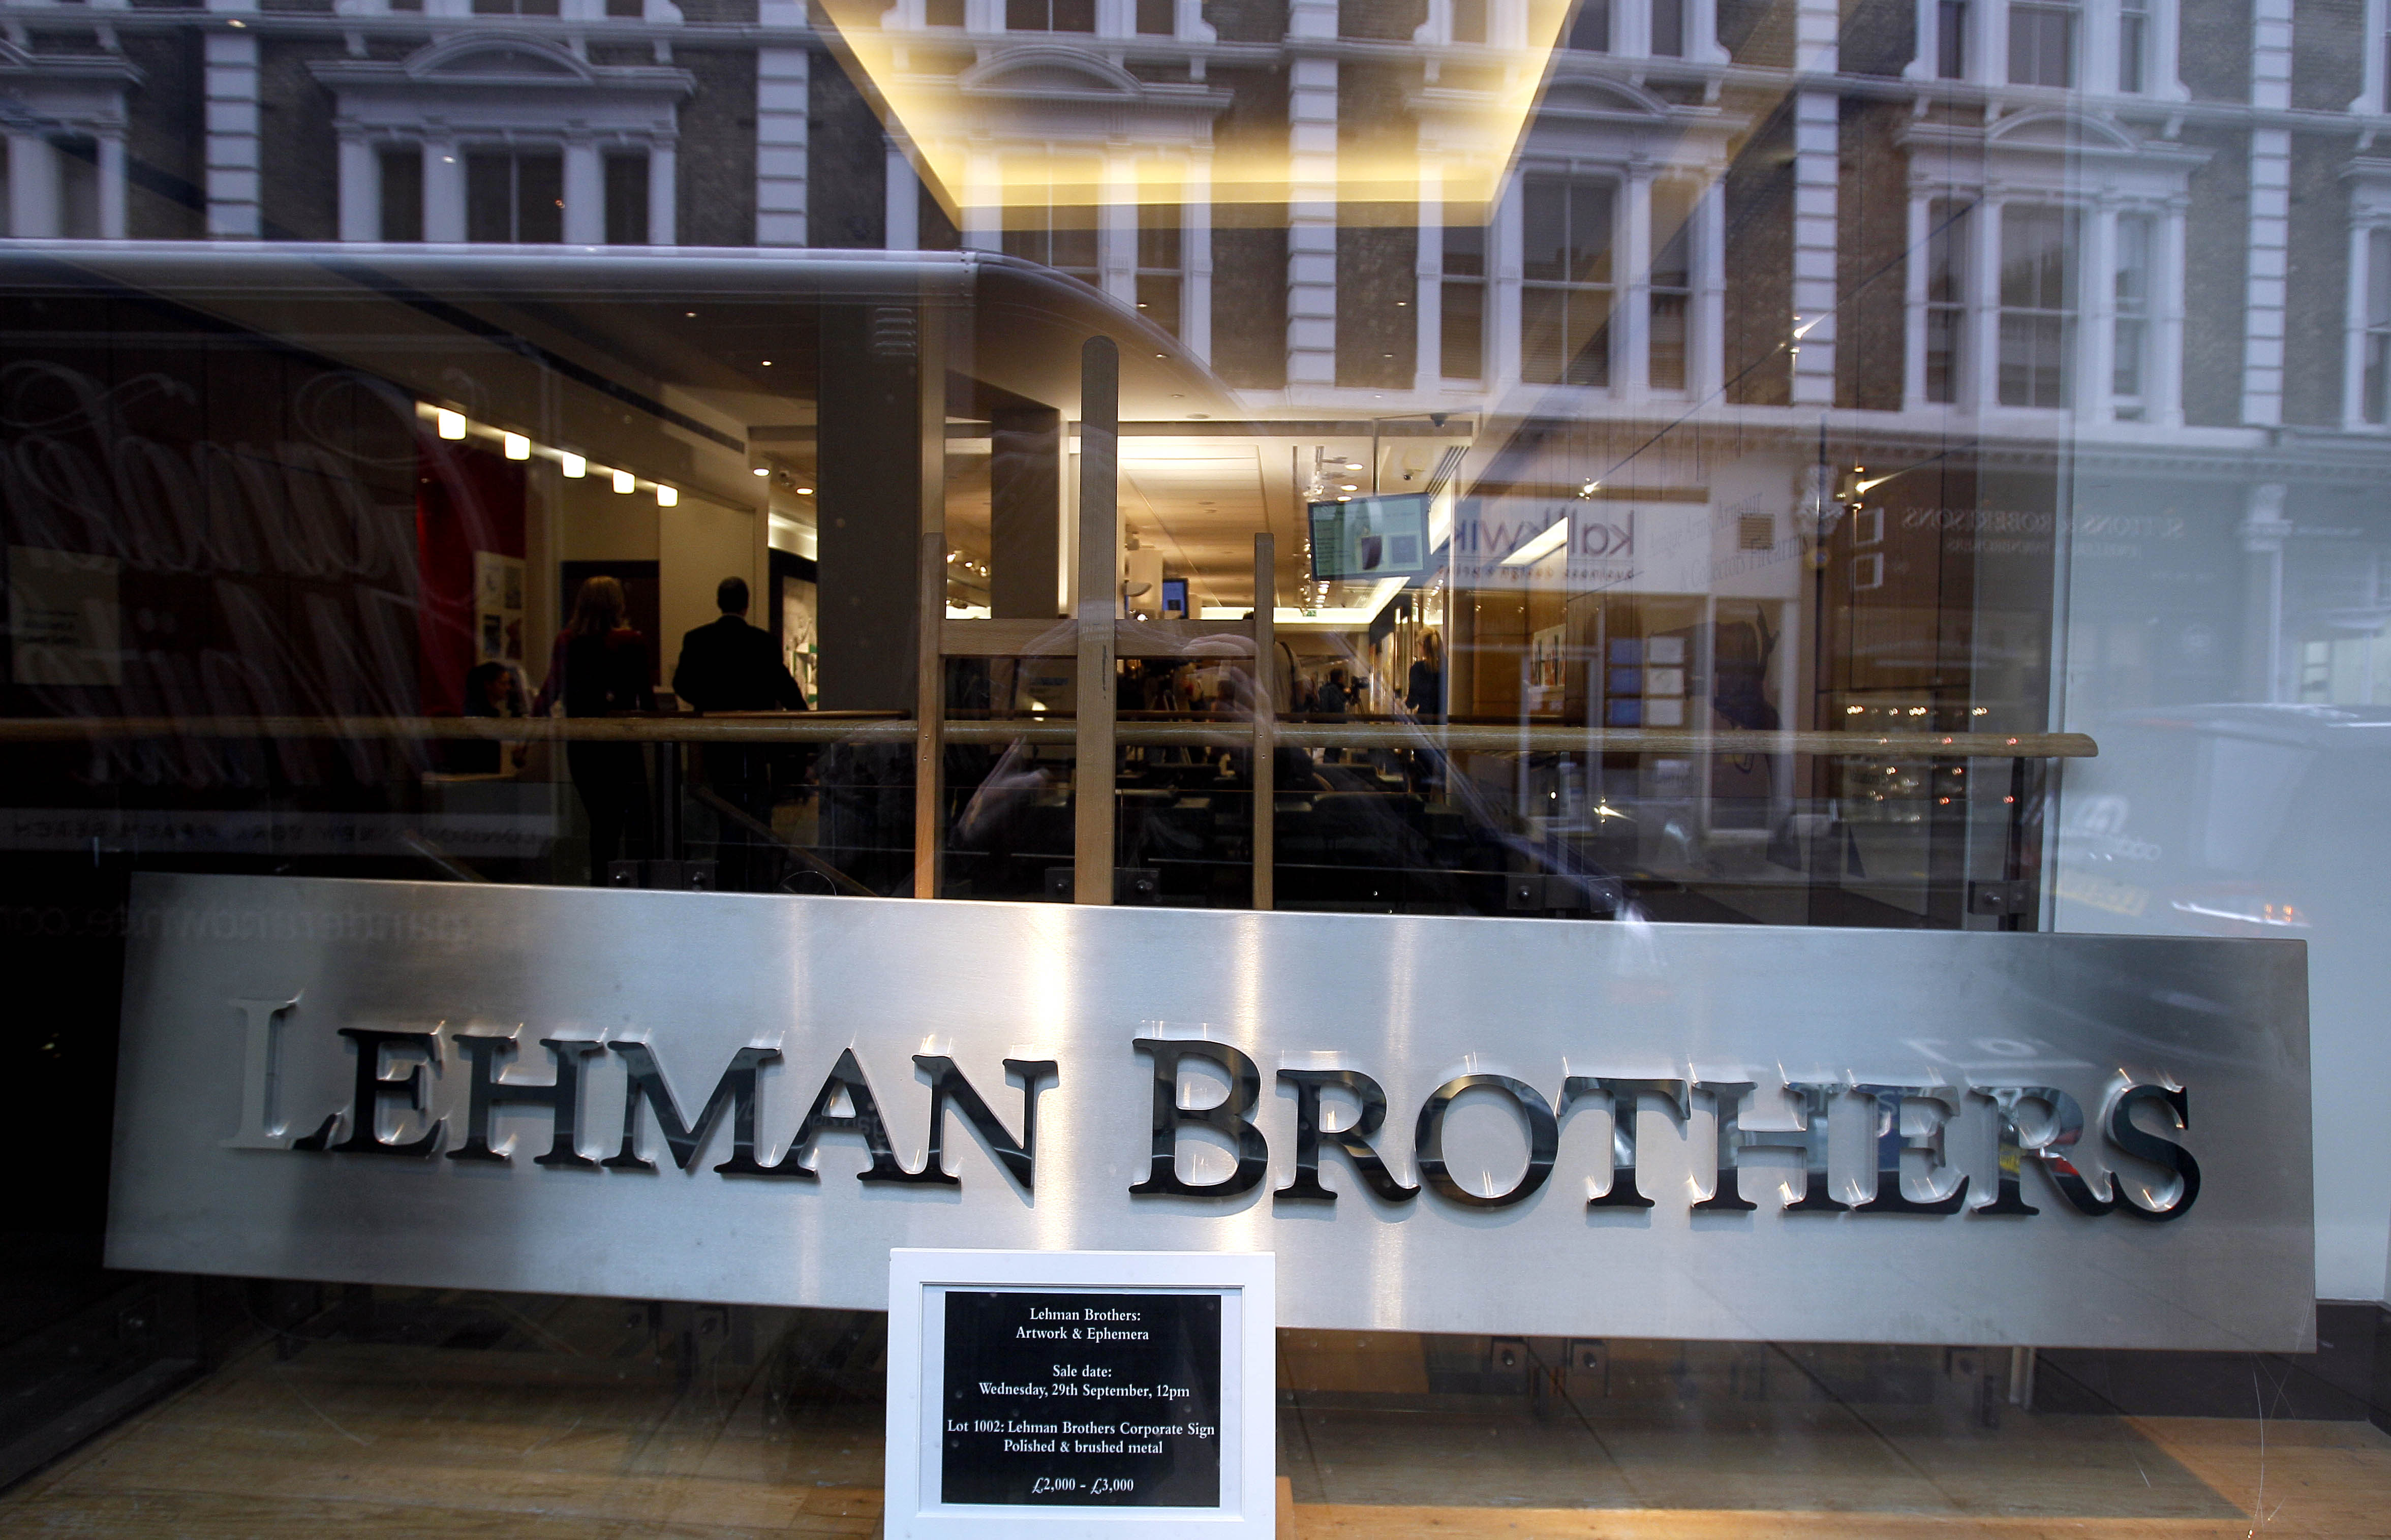 Den amerikanske banken Lehman Brothers, grundad 1850, var den första banken som gick i konkurs när finanskrisen slog till i USA år 2008.